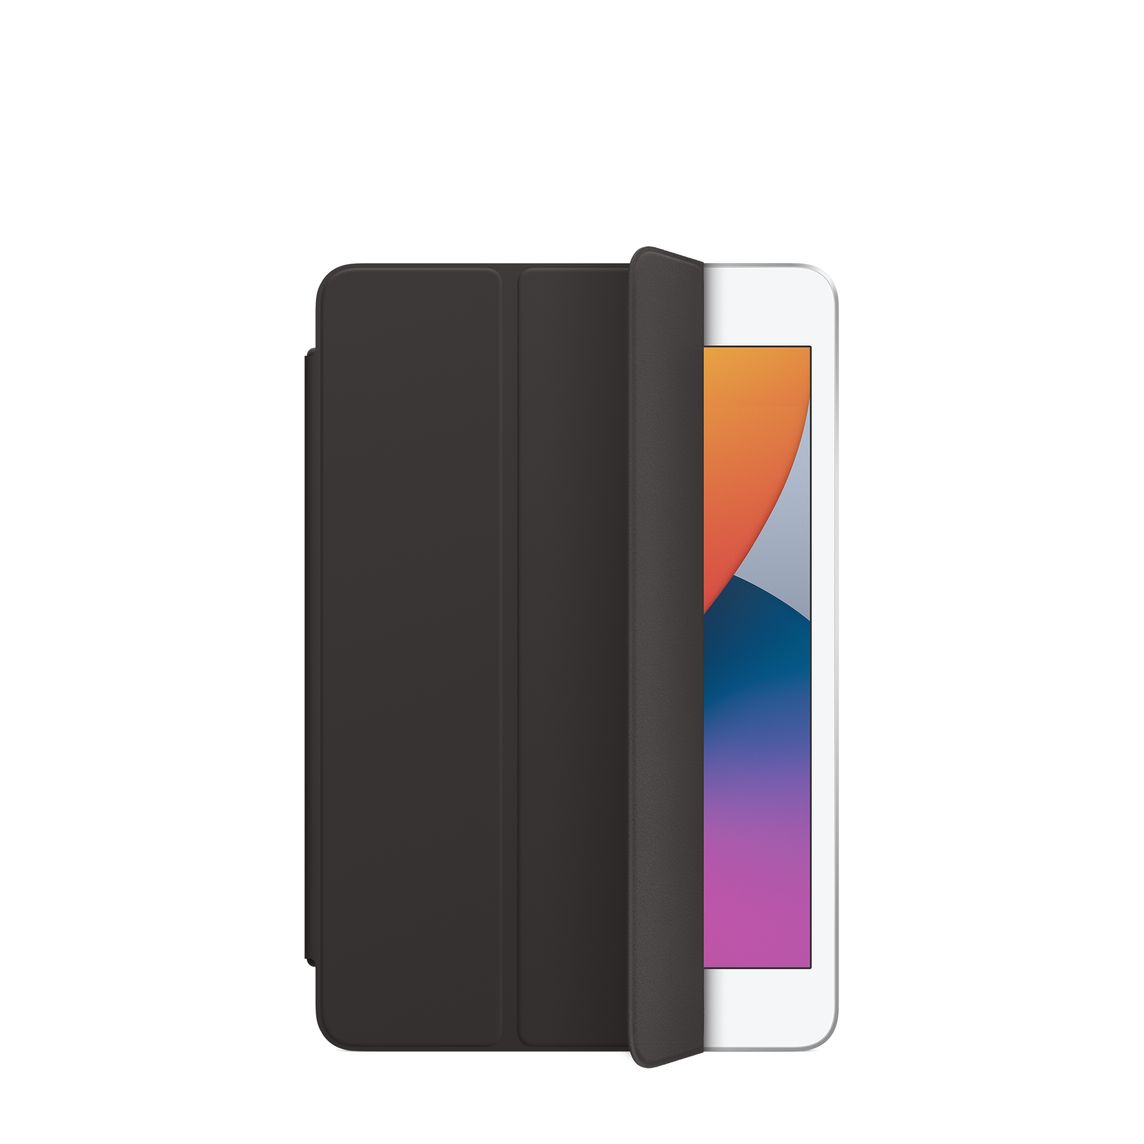 Чехол для планшета Apple Smart Cover для iPad mini (2019), черный